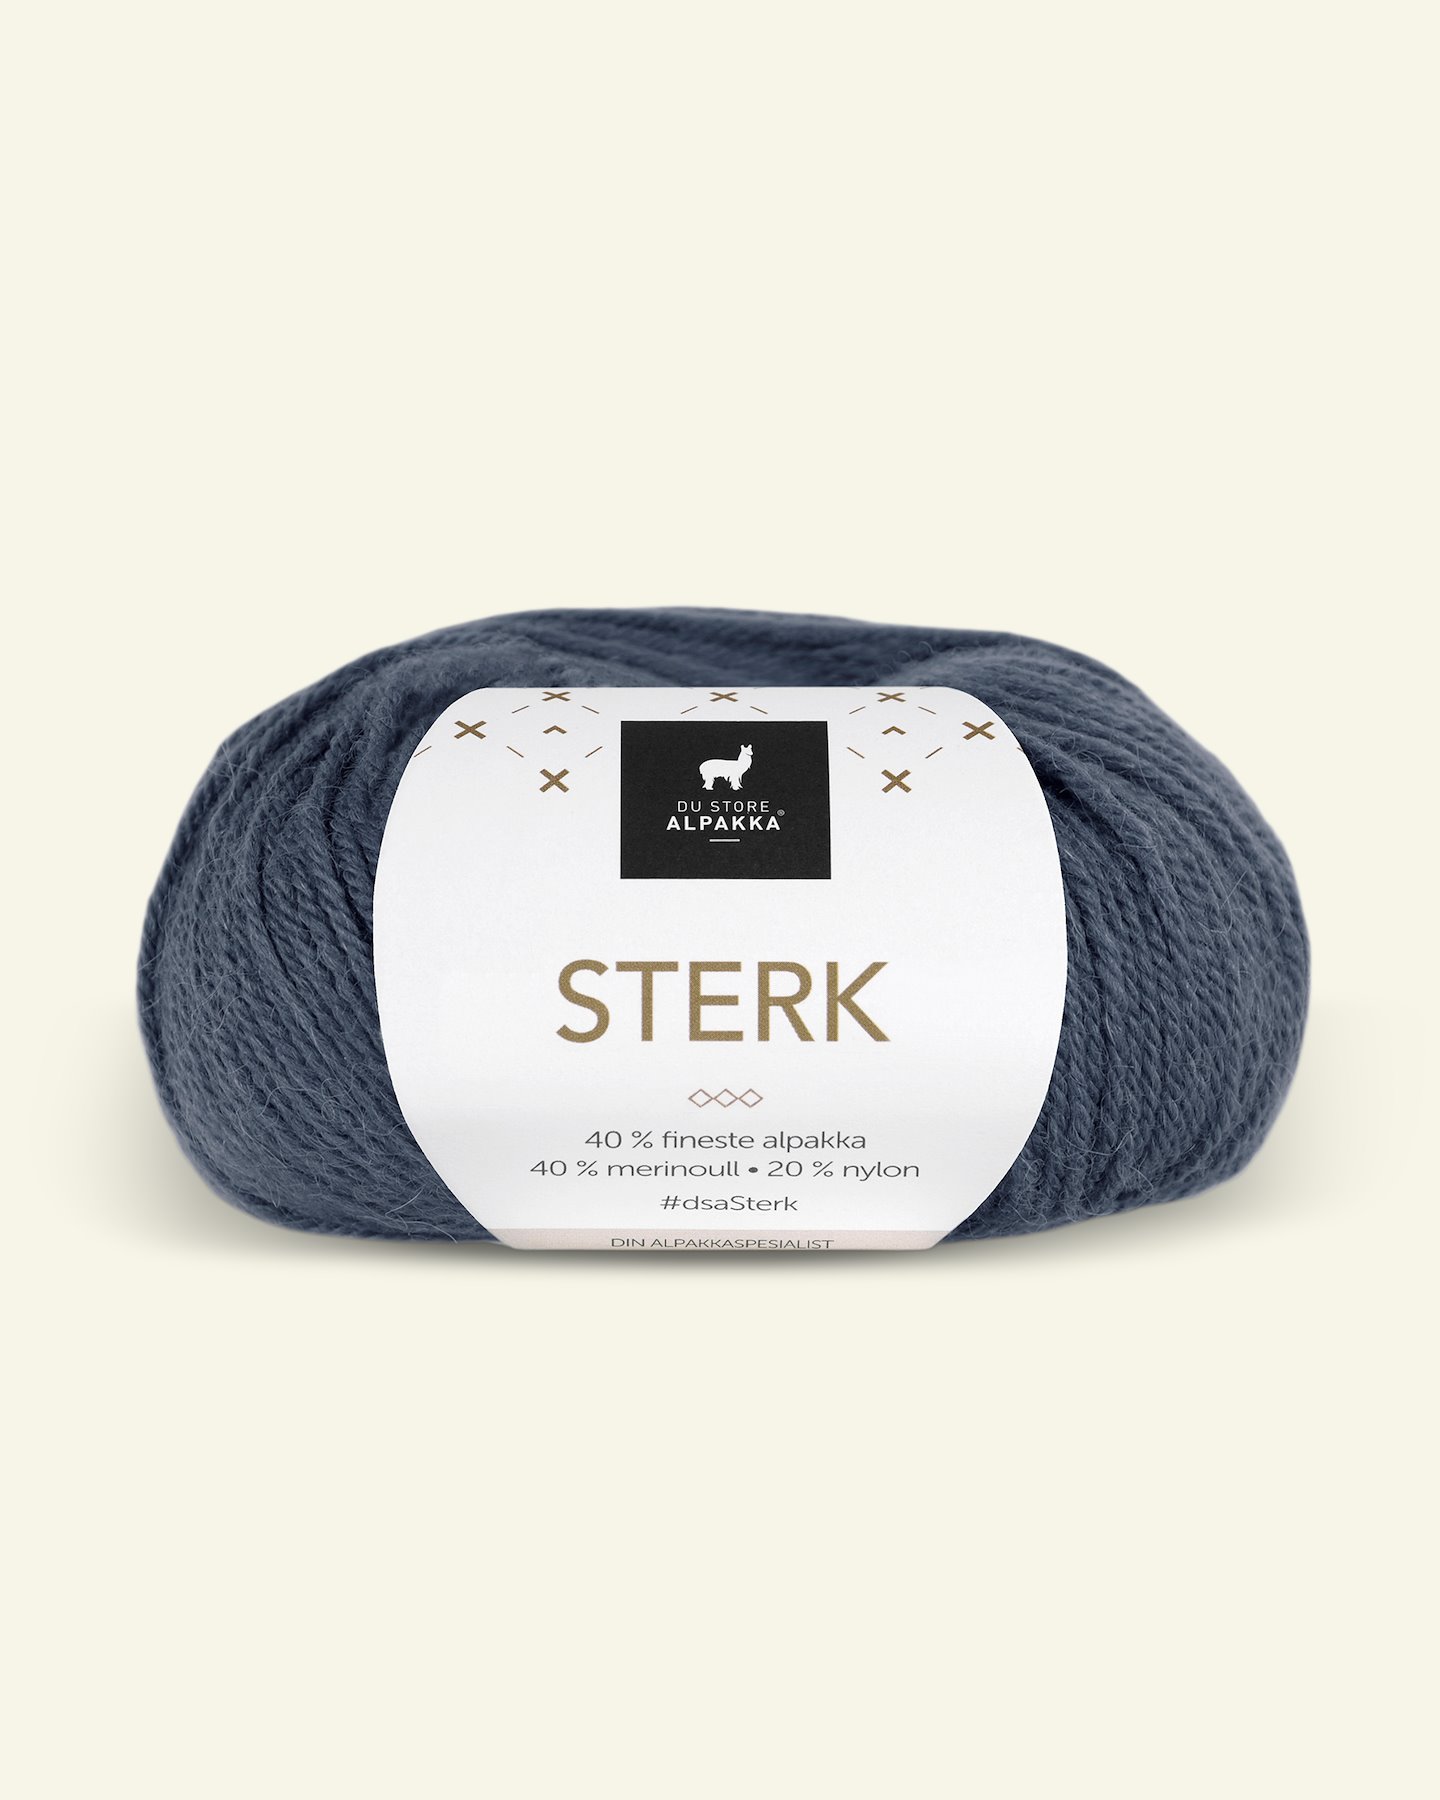 Du Store Alpakka, alpaca merino mixgarn "Sterk", mørk gråblå (861) 90000683_pack